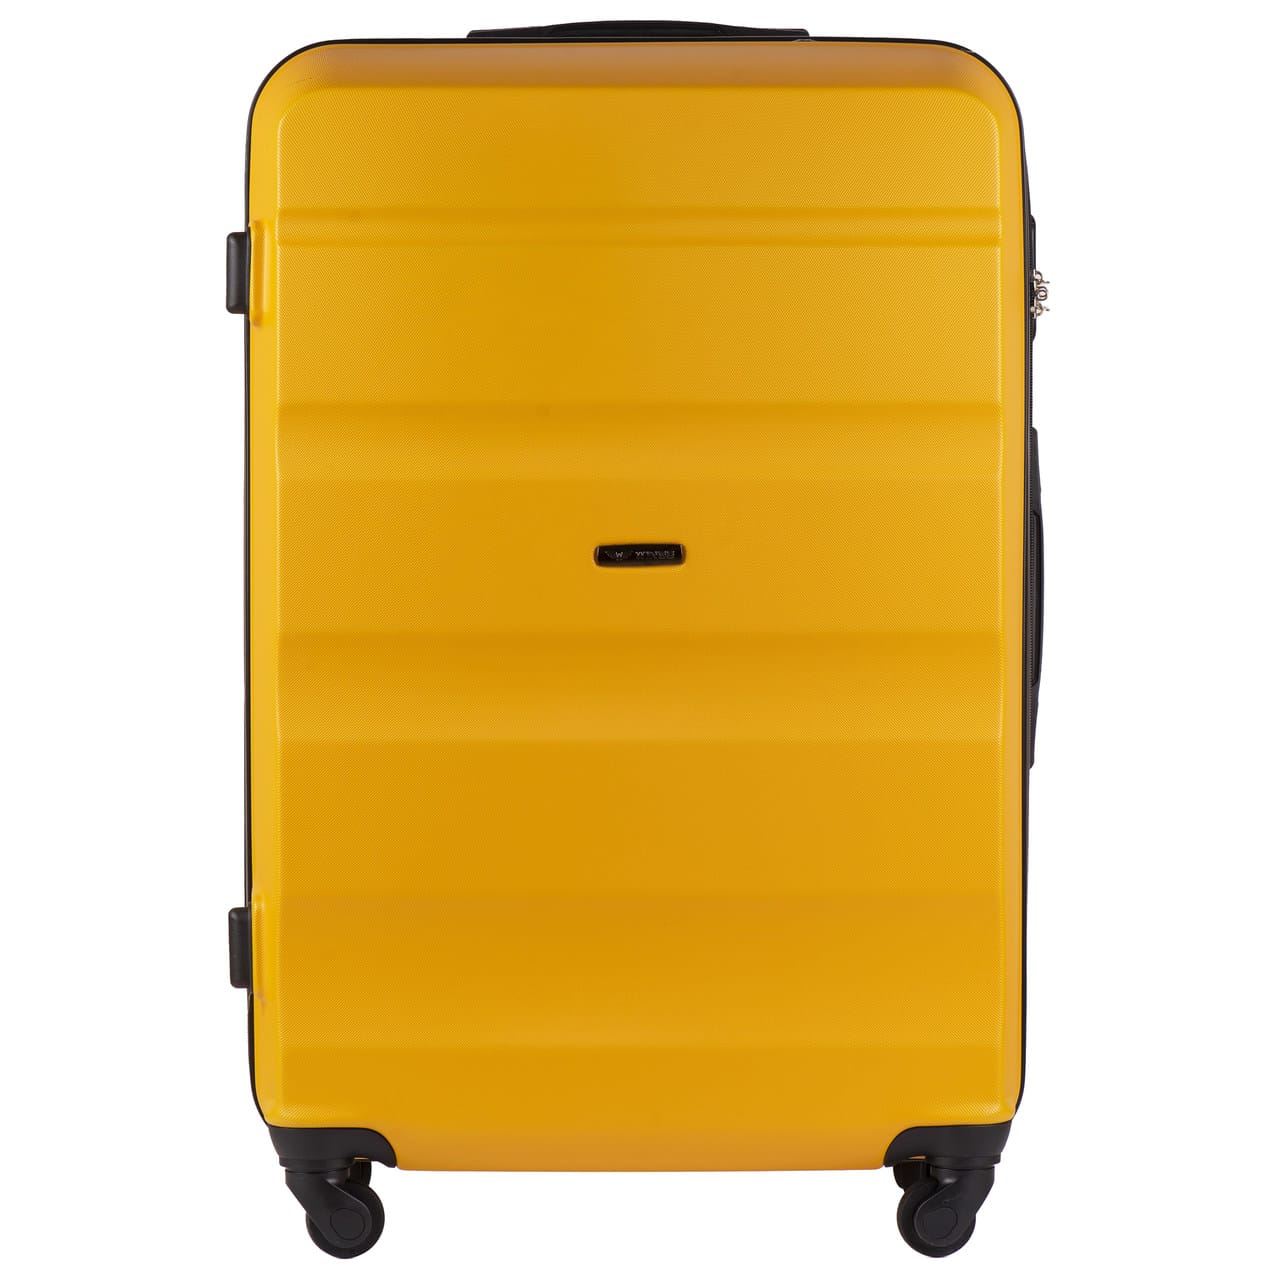 AT01-kollane-suur-reisikohver-L-ABSplastik-97l-kohvrimaailm-eest.jpg